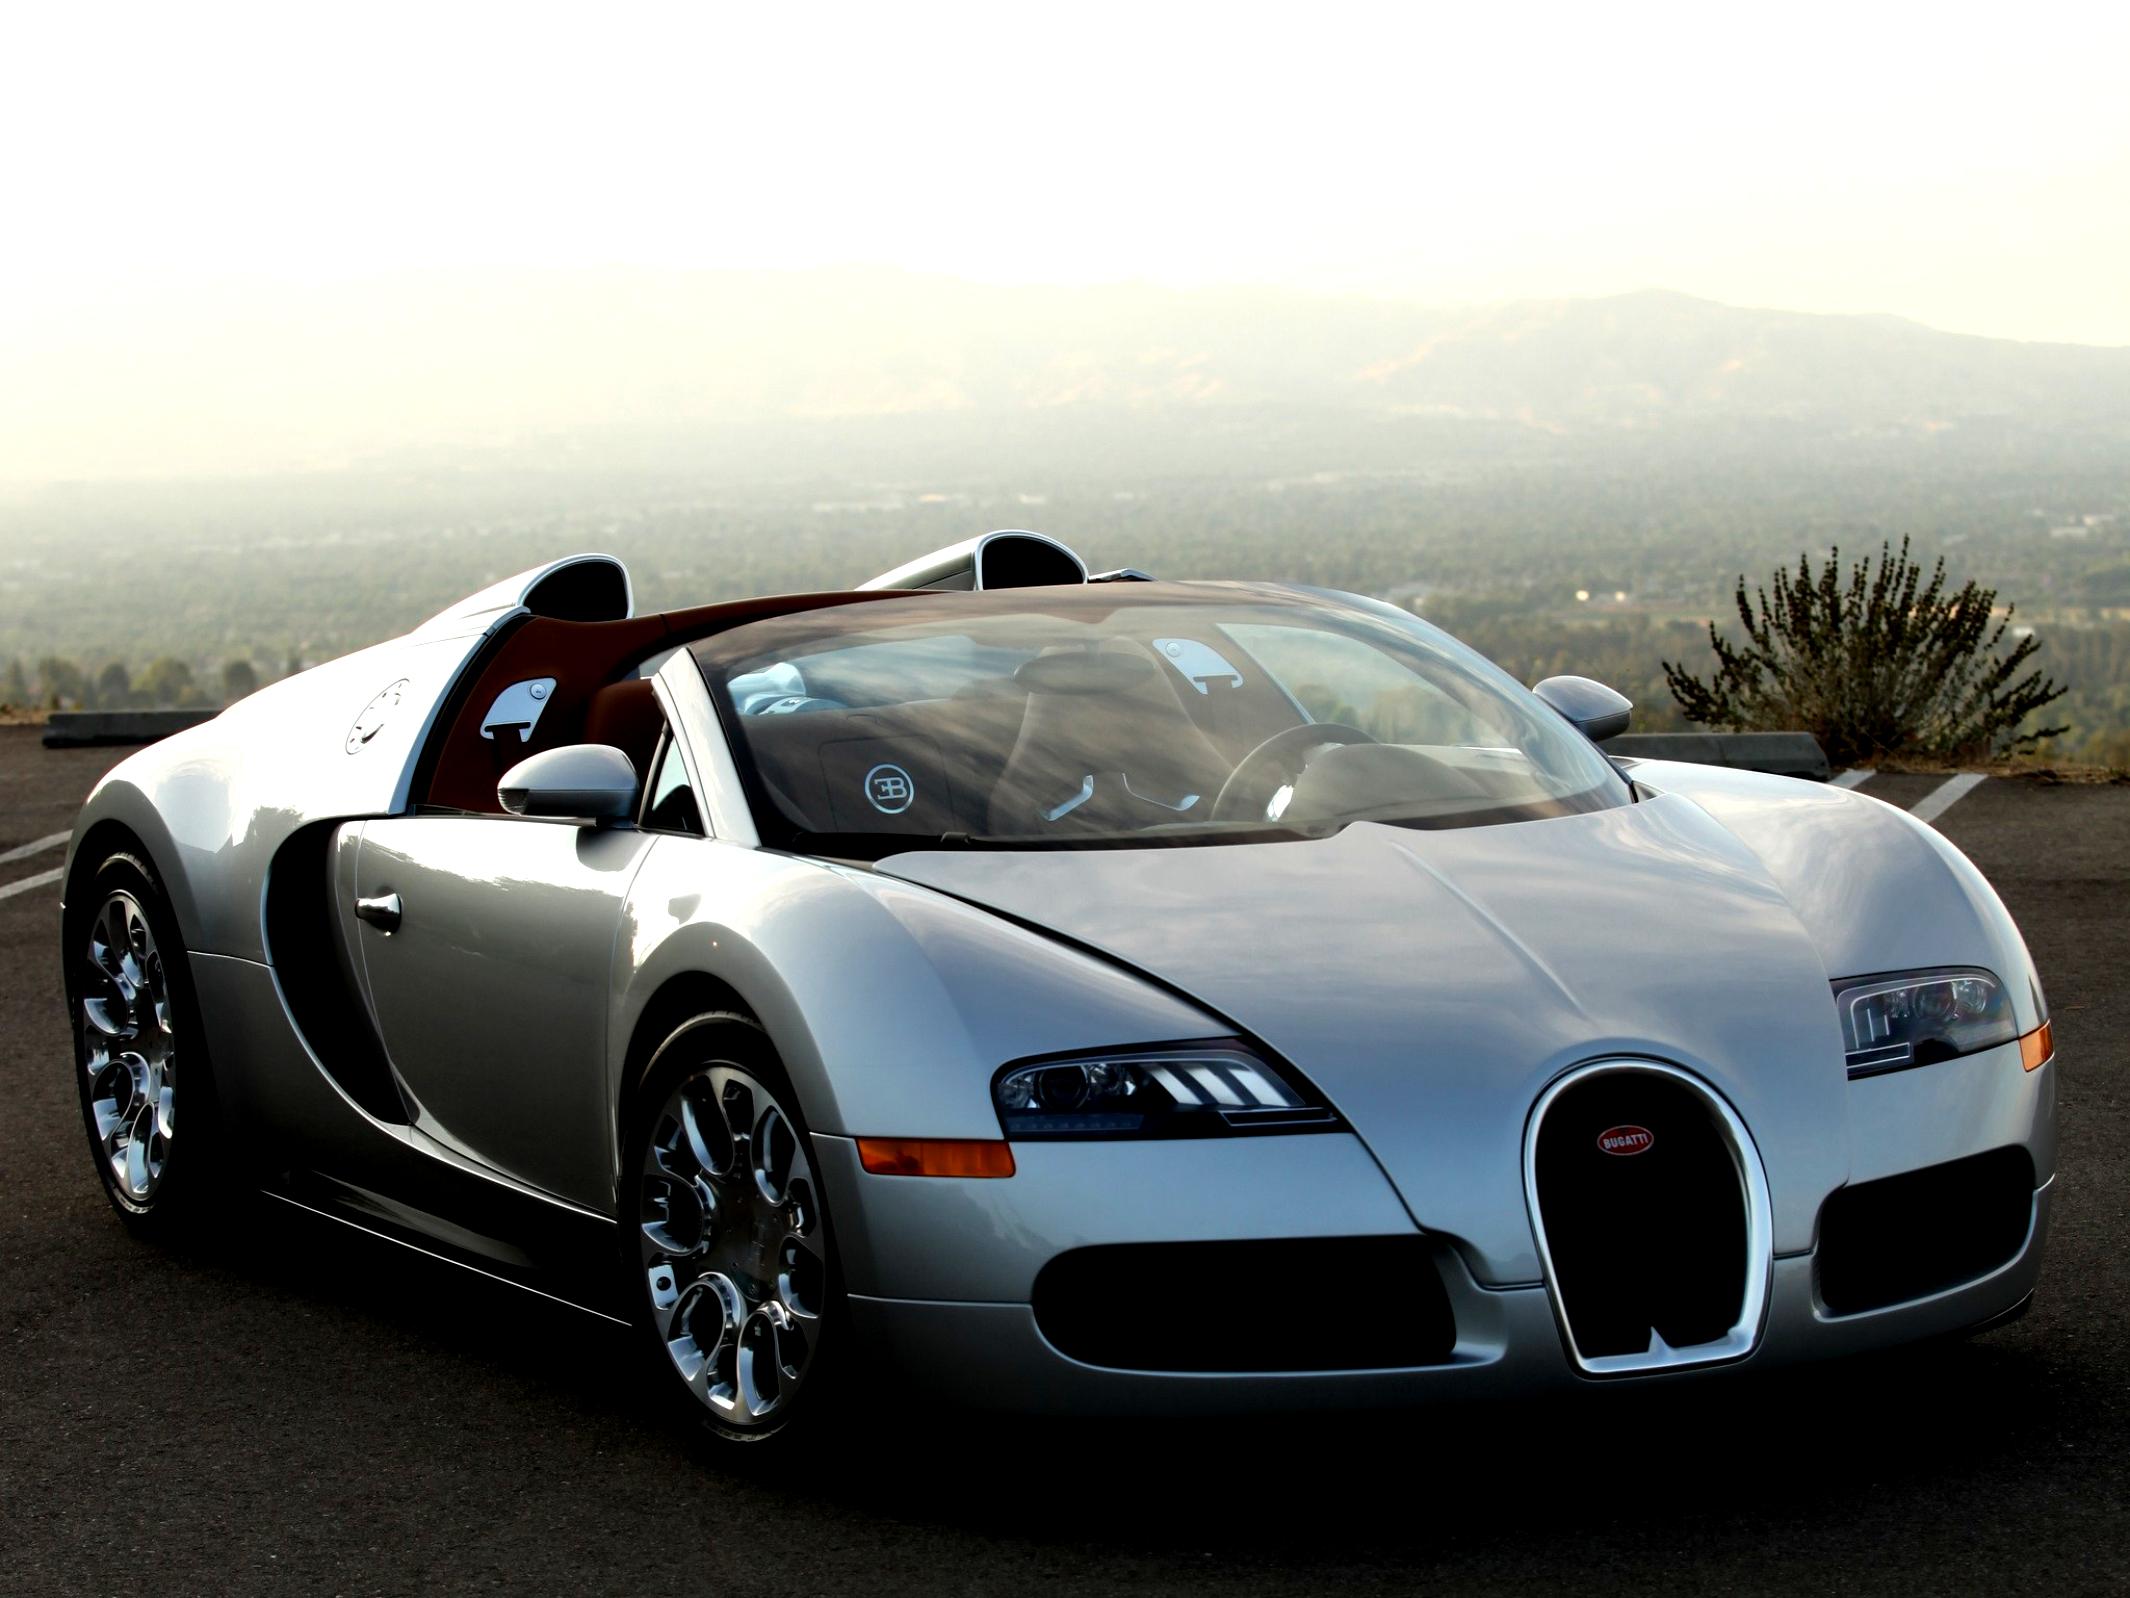 Bugatti Grand Sport 2009 #48